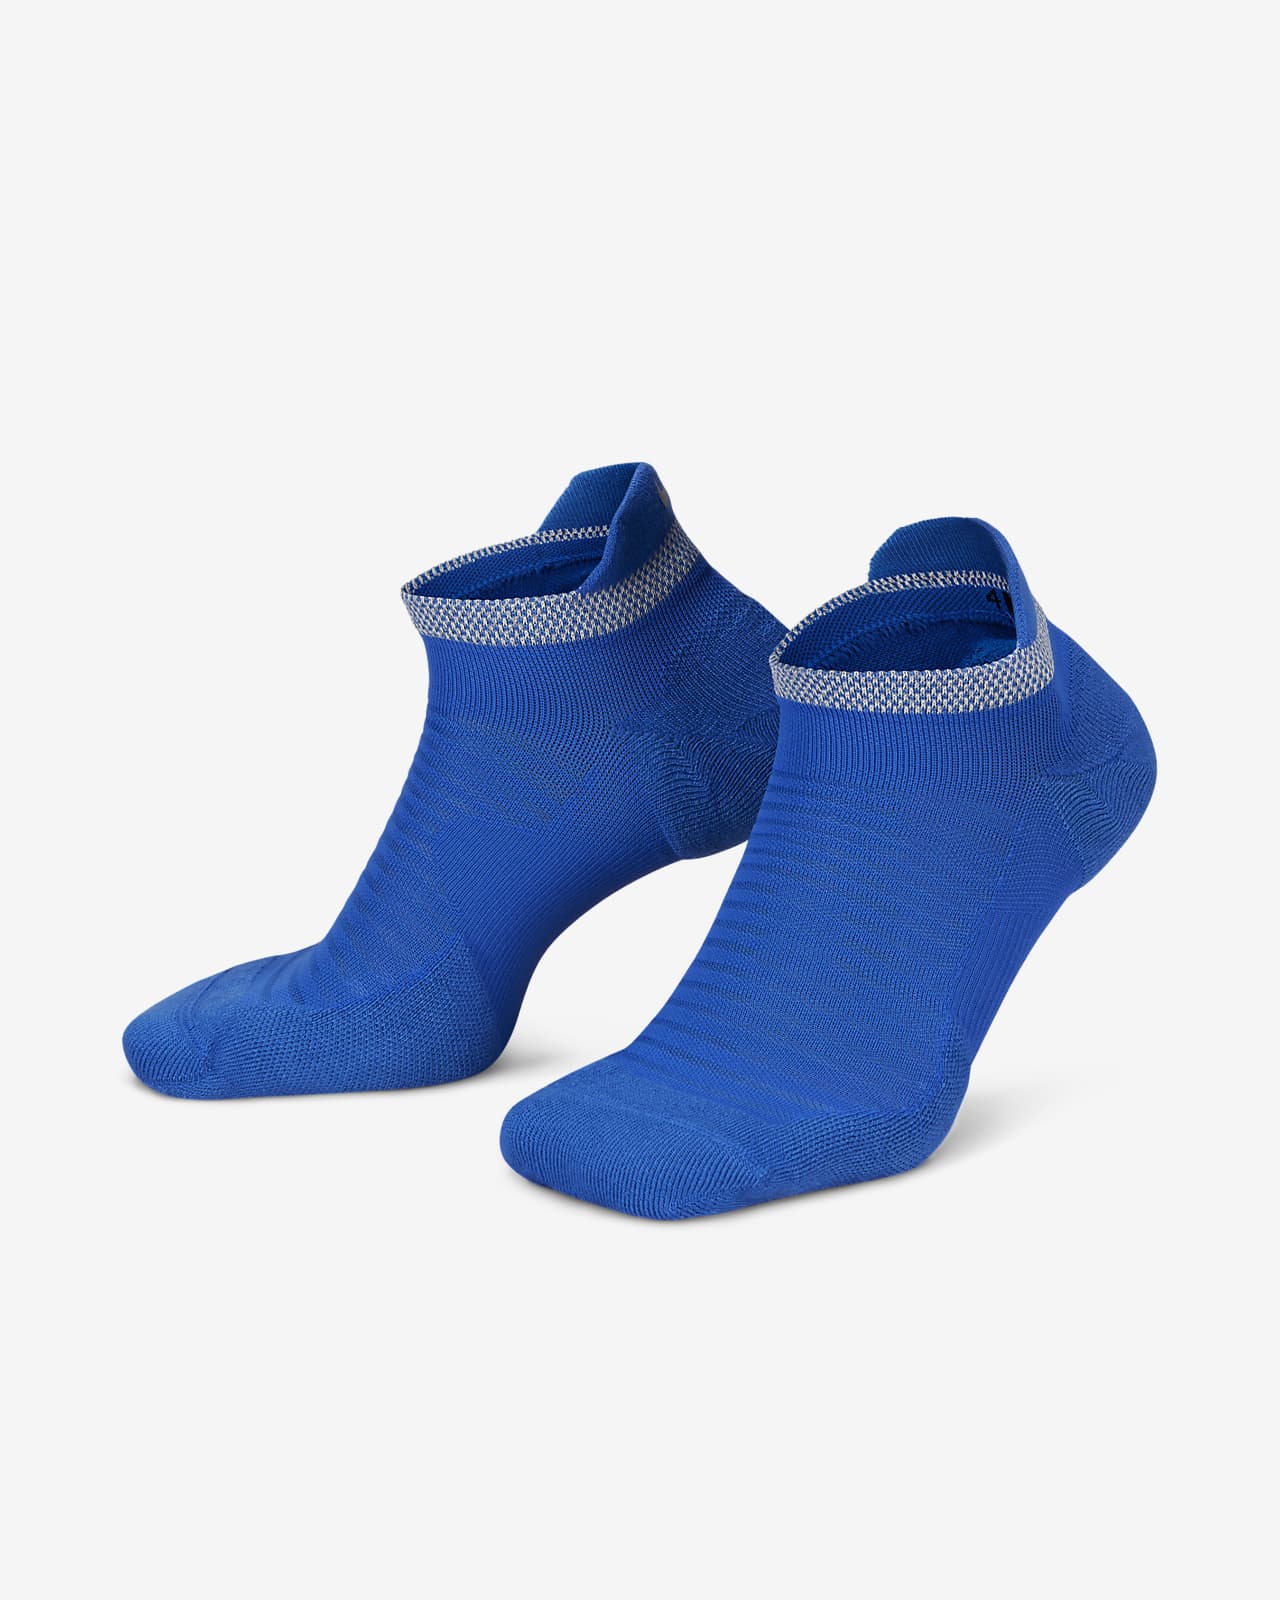 Aftersocks: calcetines para andar descalzo por la calle, sin zapatos